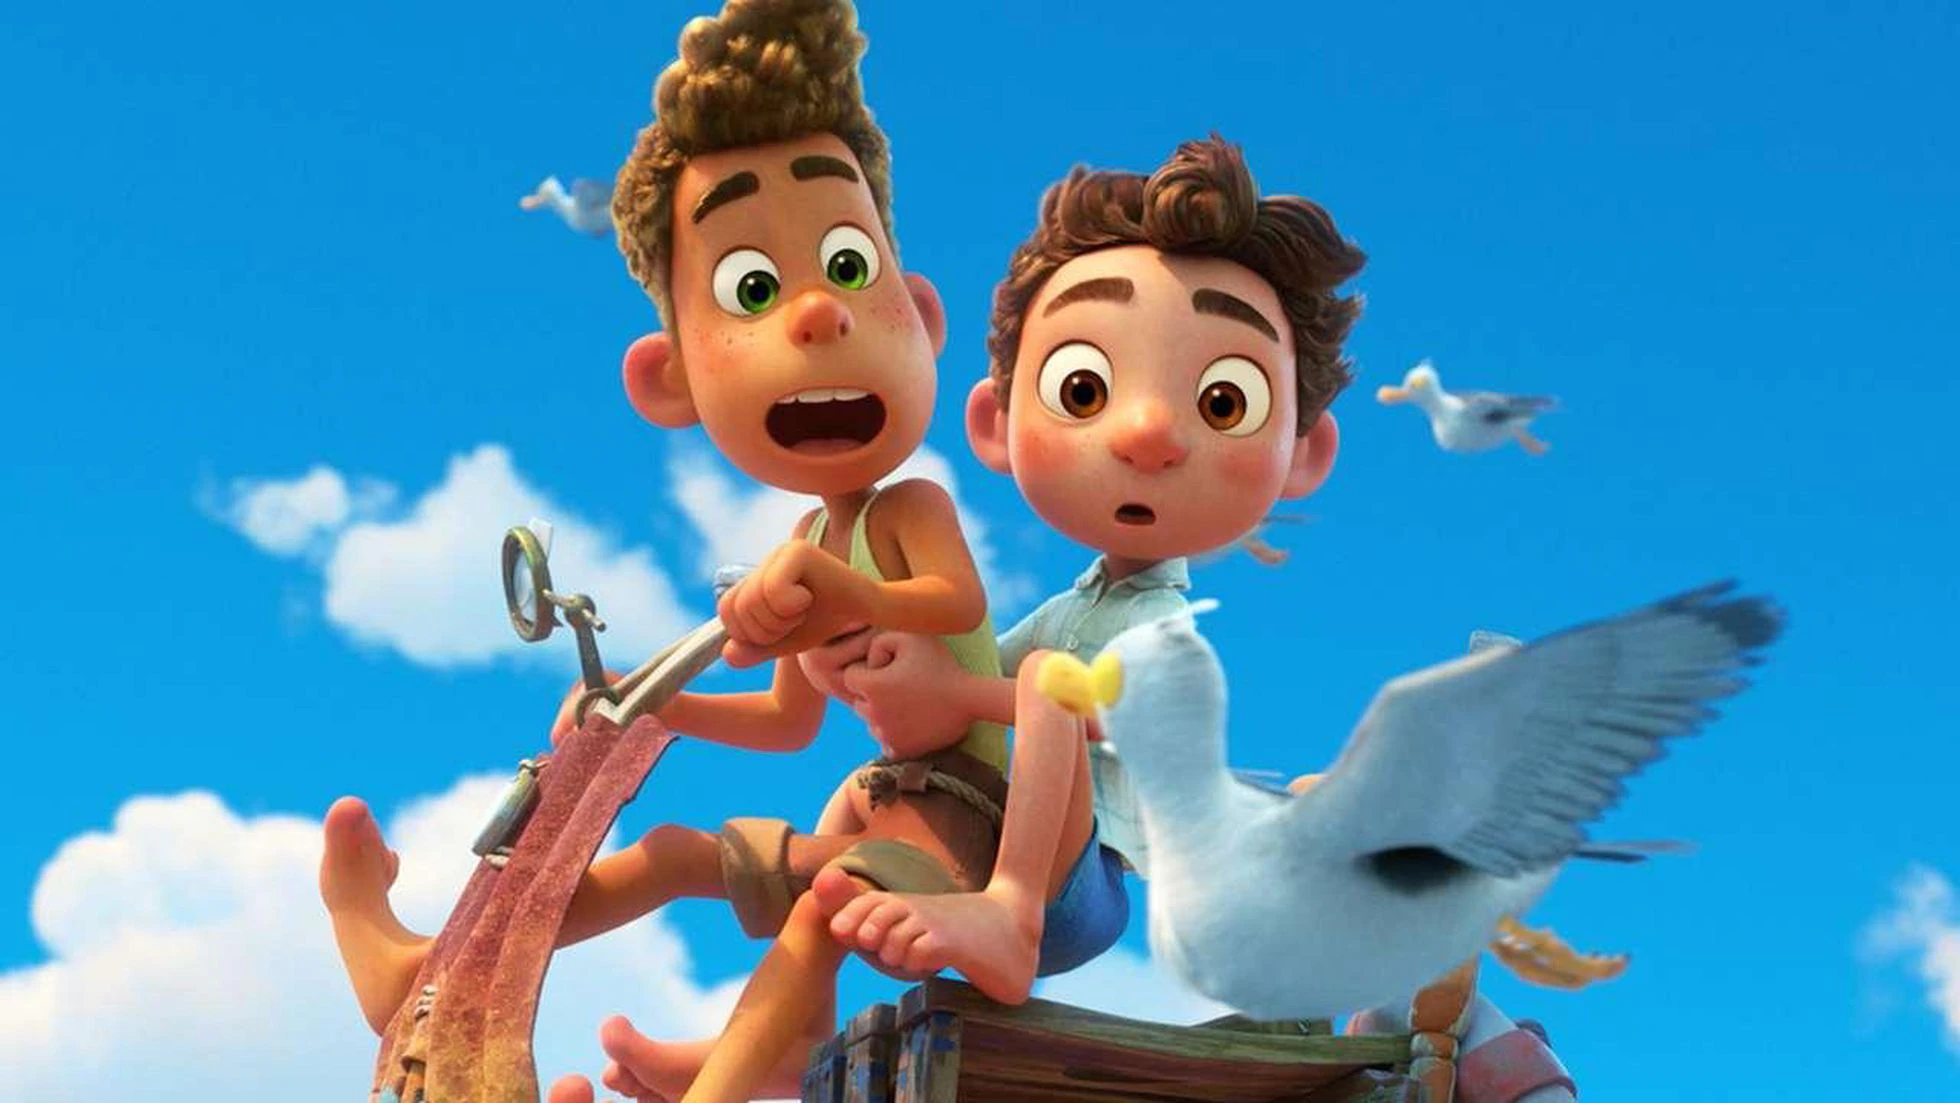 Cena do filme em animação Luca, da Pixar Animation Studios. Imagem retangular e colorida. Nela, vemos dois garotos em cima de uma moto improvisada, montada com objetos velhos e enferrujados. Eles estão no ar, como se tivessem sido lançados para cima, e encaram, espantados, uma das gaivotas de um bando que voa na altura em que estão. O primeiro, que pilota a moto, é Alberto, um garoto pardo, de 14 anos, com cabelos encaracolados claros e olhos verdes. Ele veste uma regata amarela, uma bermuda marrom e, nos pés, está descalço. Enquanto olha para a gaivota, sua boca fica aberta e suas duas mãos seguram o guidão da moto. Atrás dele, está Luca, um garoto branco, de bochechas rosadas, cabelos lisos e olhos da cor castanha. Ele veste uma camisa xadrez azul-clara, uma bermuda azul-escura e, assim como Alberto, está descalço. Enquanto também encara a gaivota, sua boca fica entreaberta, e ele se segura em Alberto pelo torso. O fundo é um céu limpo e ensolarado.